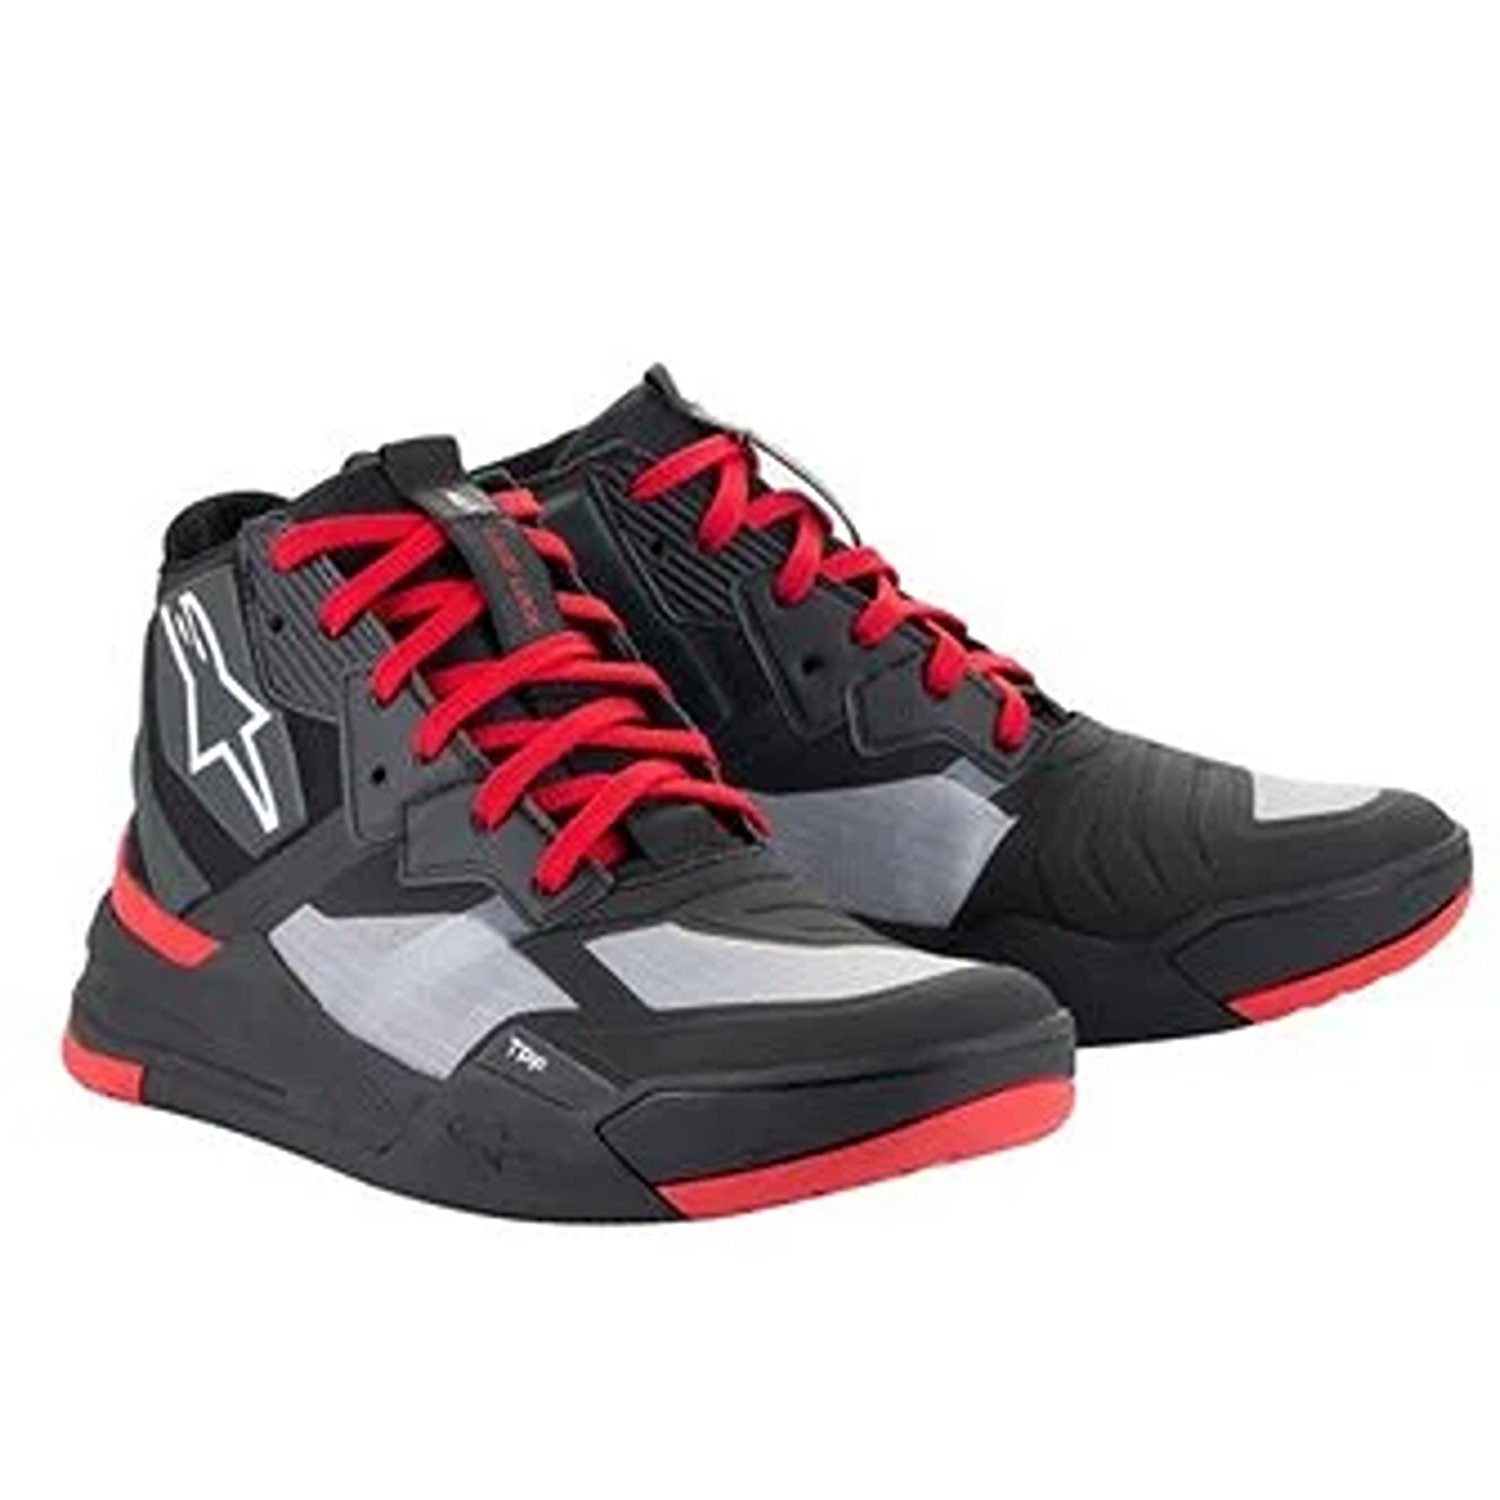 Image of Alpinestars Speedflight Shoes Black Bright Red White Größe US 9